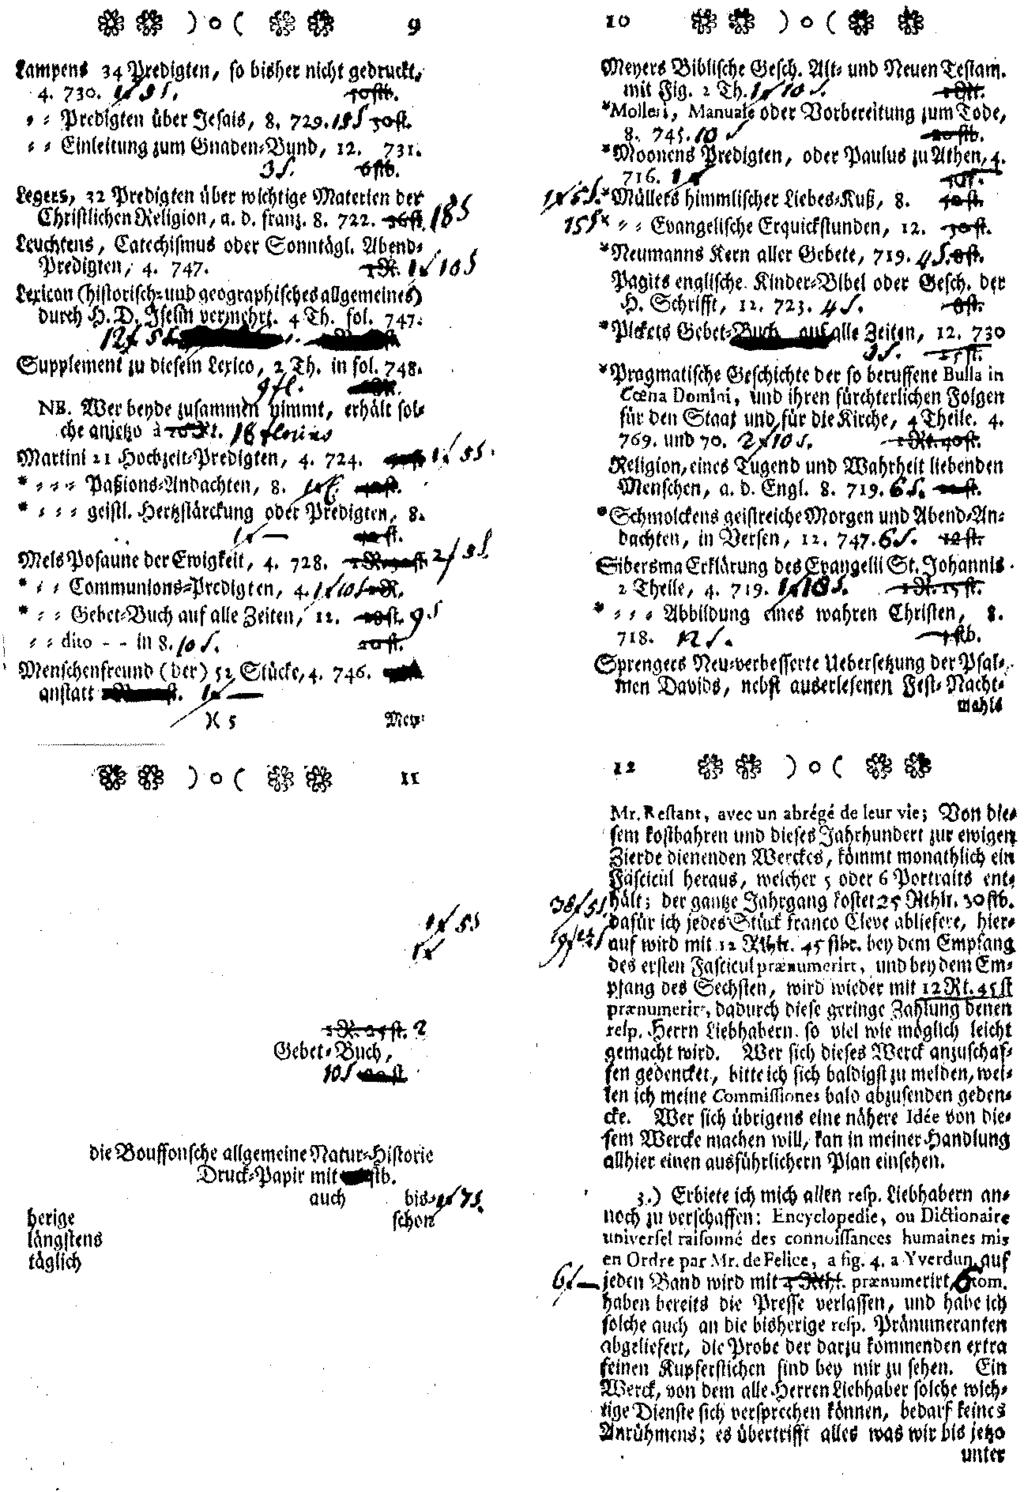 Die Kataloge des Klever Buchhändlers J ohann Gottlieb Euerstecher 1771 m r., uno r (!Je!Qn cn; mlt itur st../ Q.iafel 766. rdbpa